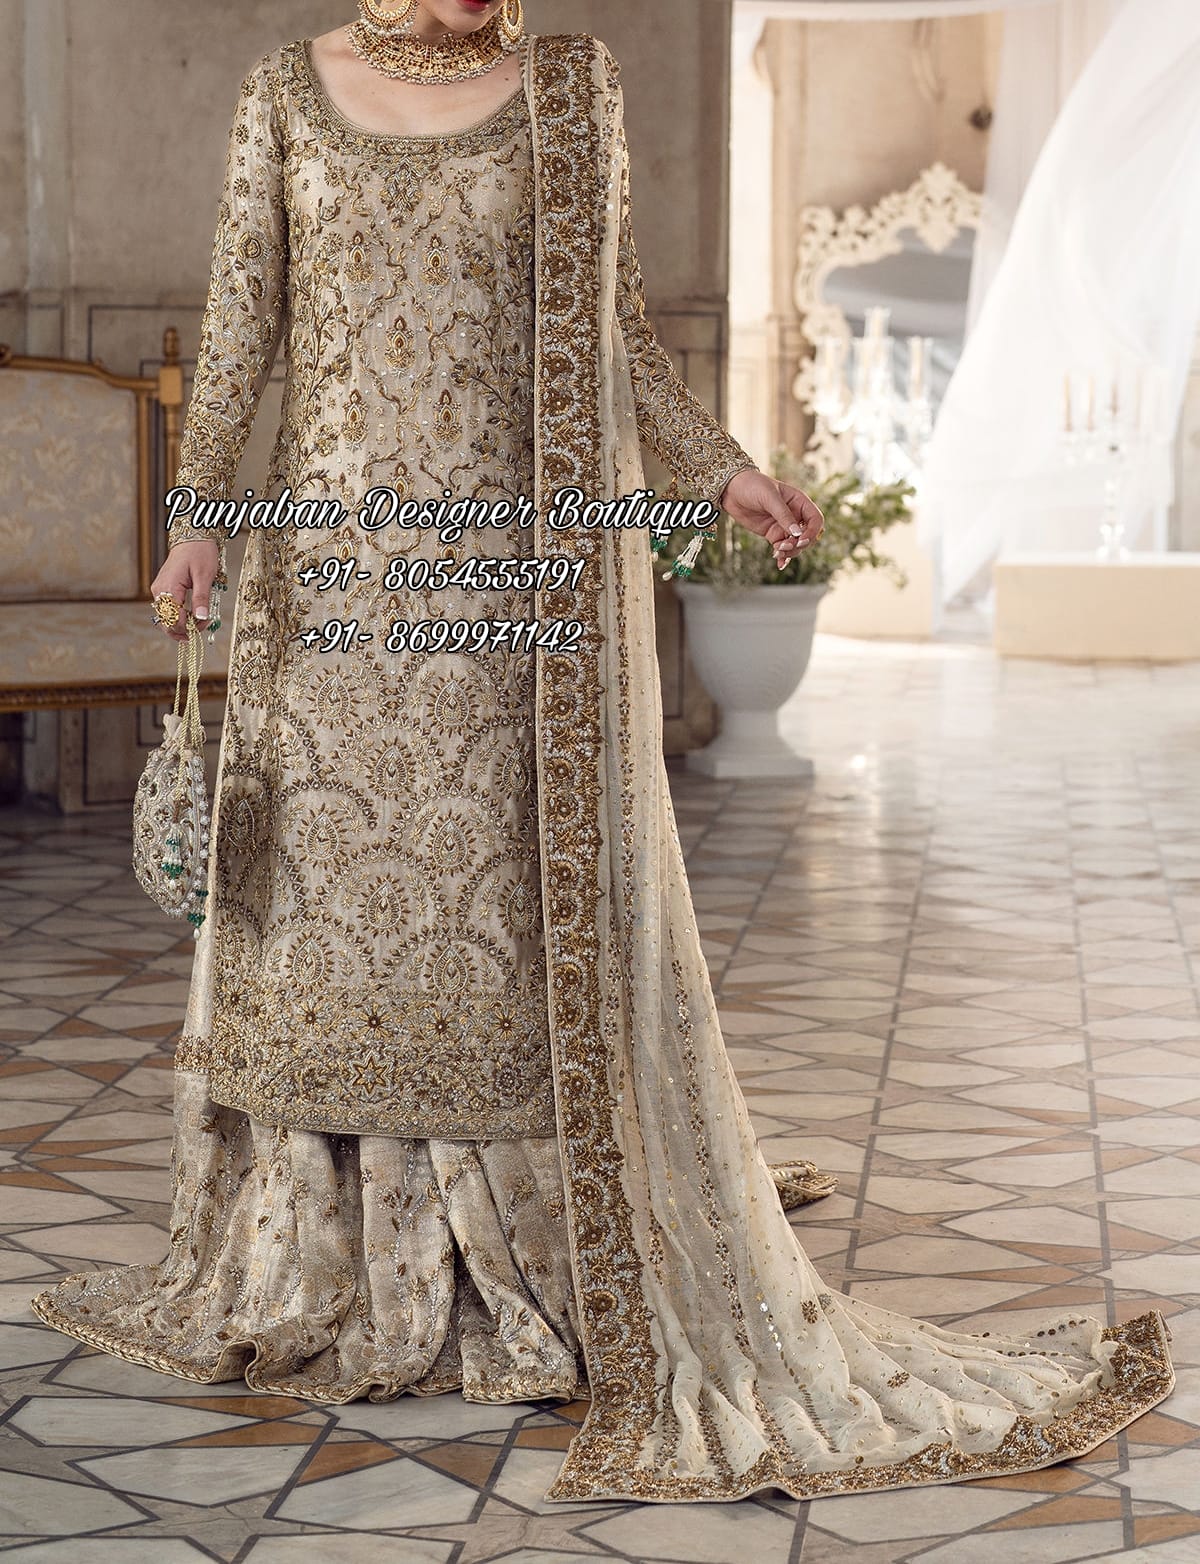 Punjabi Suits Neck Designs | Maharani Designer Boutique